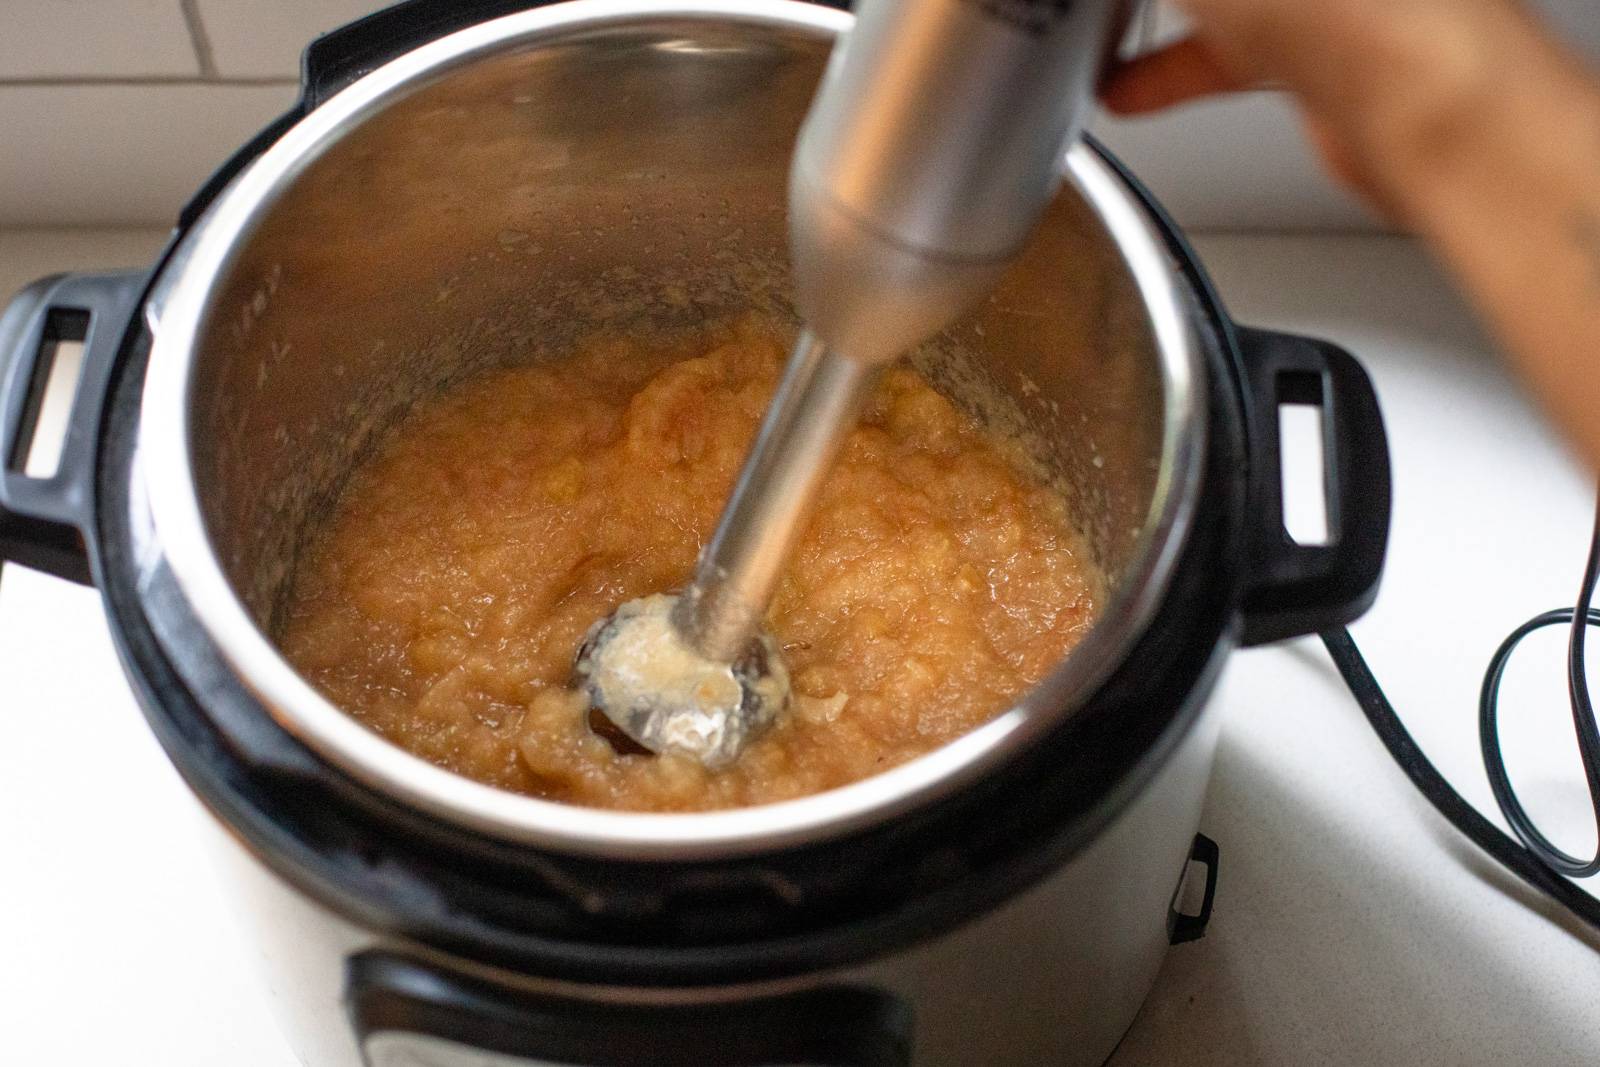 Blending applesauce in the Instant Pot using an immersion blender.